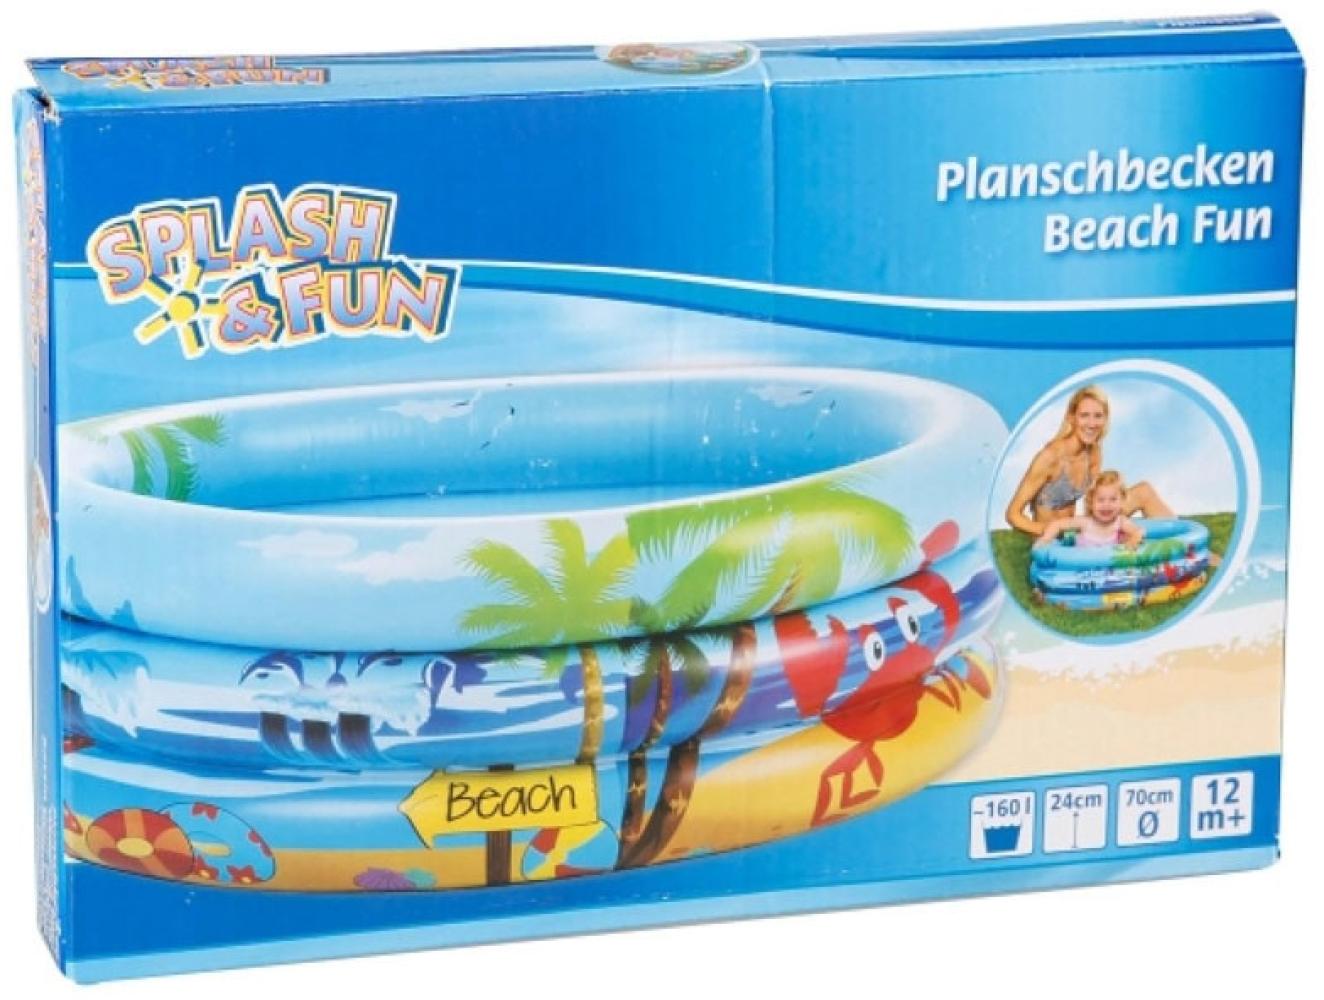 Splash & Fun Babyplanschbecken Beach Bild 1